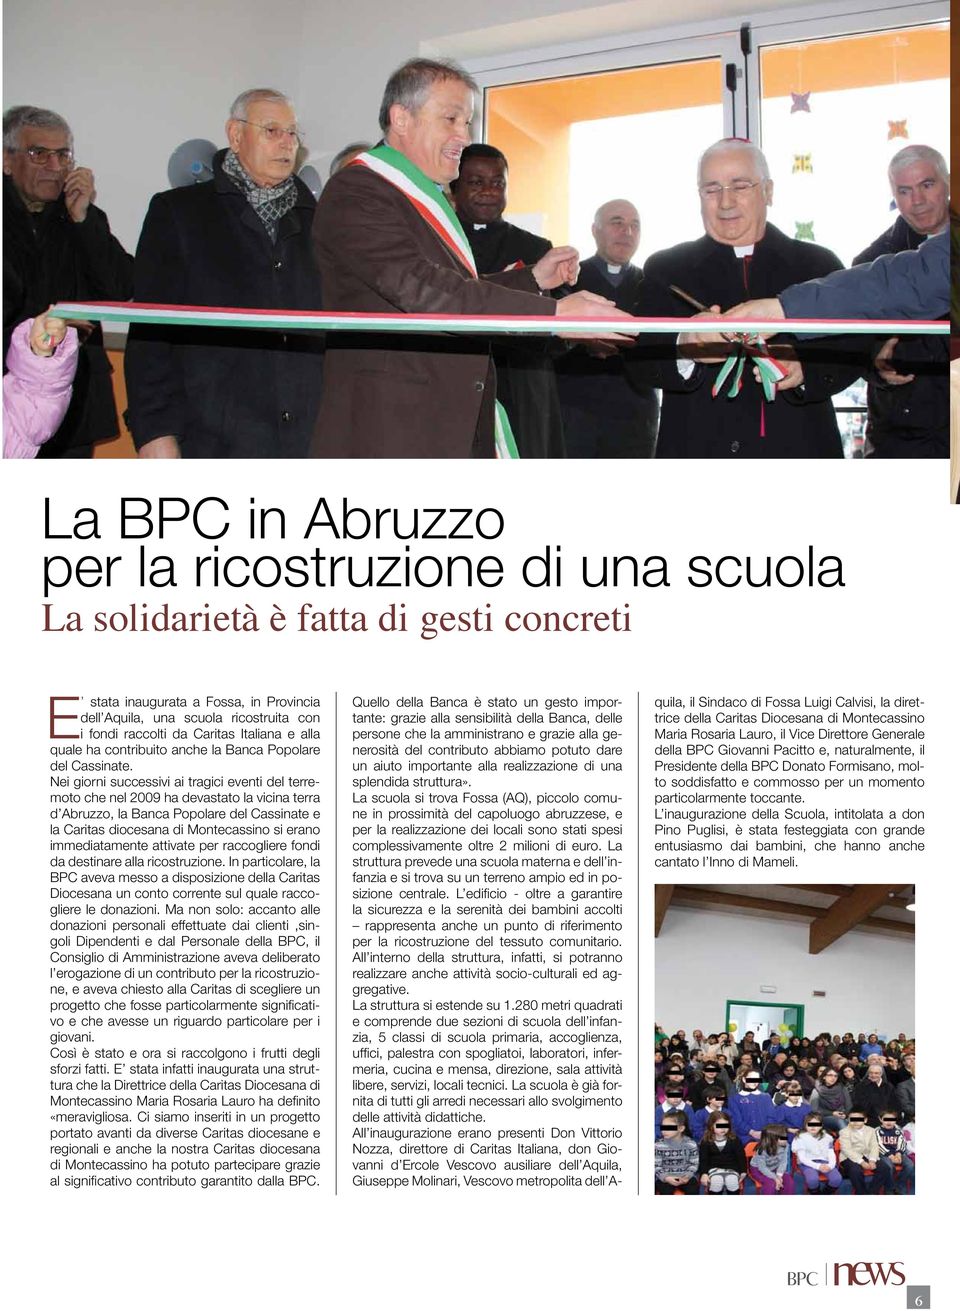 Nei giorni successivi ai tragici eventi del terremoto che nel 2009 ha devastato la vicina terra d Abruzzo, la Banca Popolare del Cassinate e la Caritas diocesana di Montecassino si erano